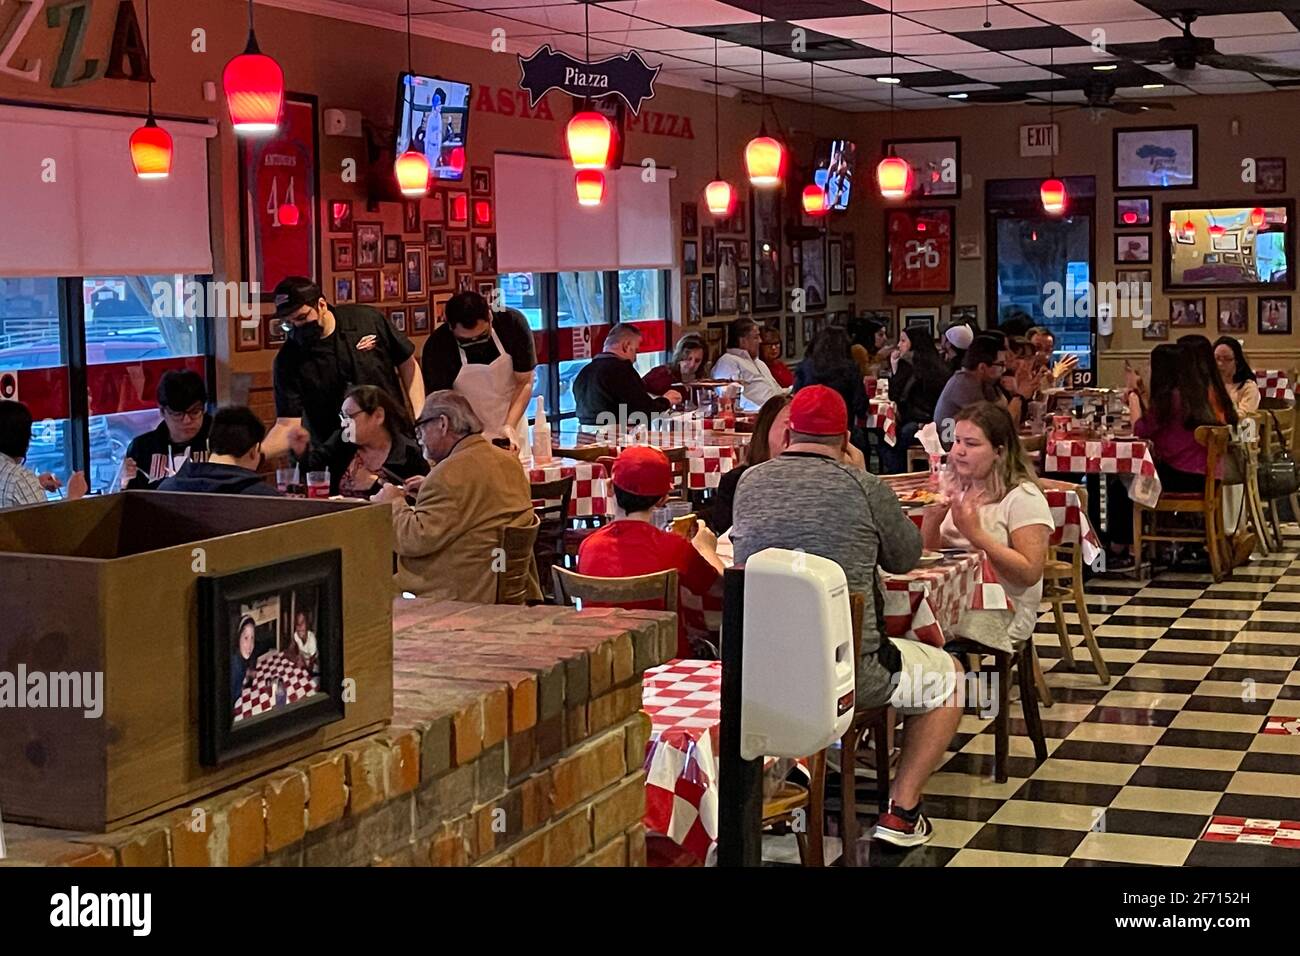 Am Samstag, den 3. April 2021, in San Antonio, speisen Gäste ohne Gesichtsmasken im italienischen Pizzeria-Restaurant des Julian's. Stockfoto